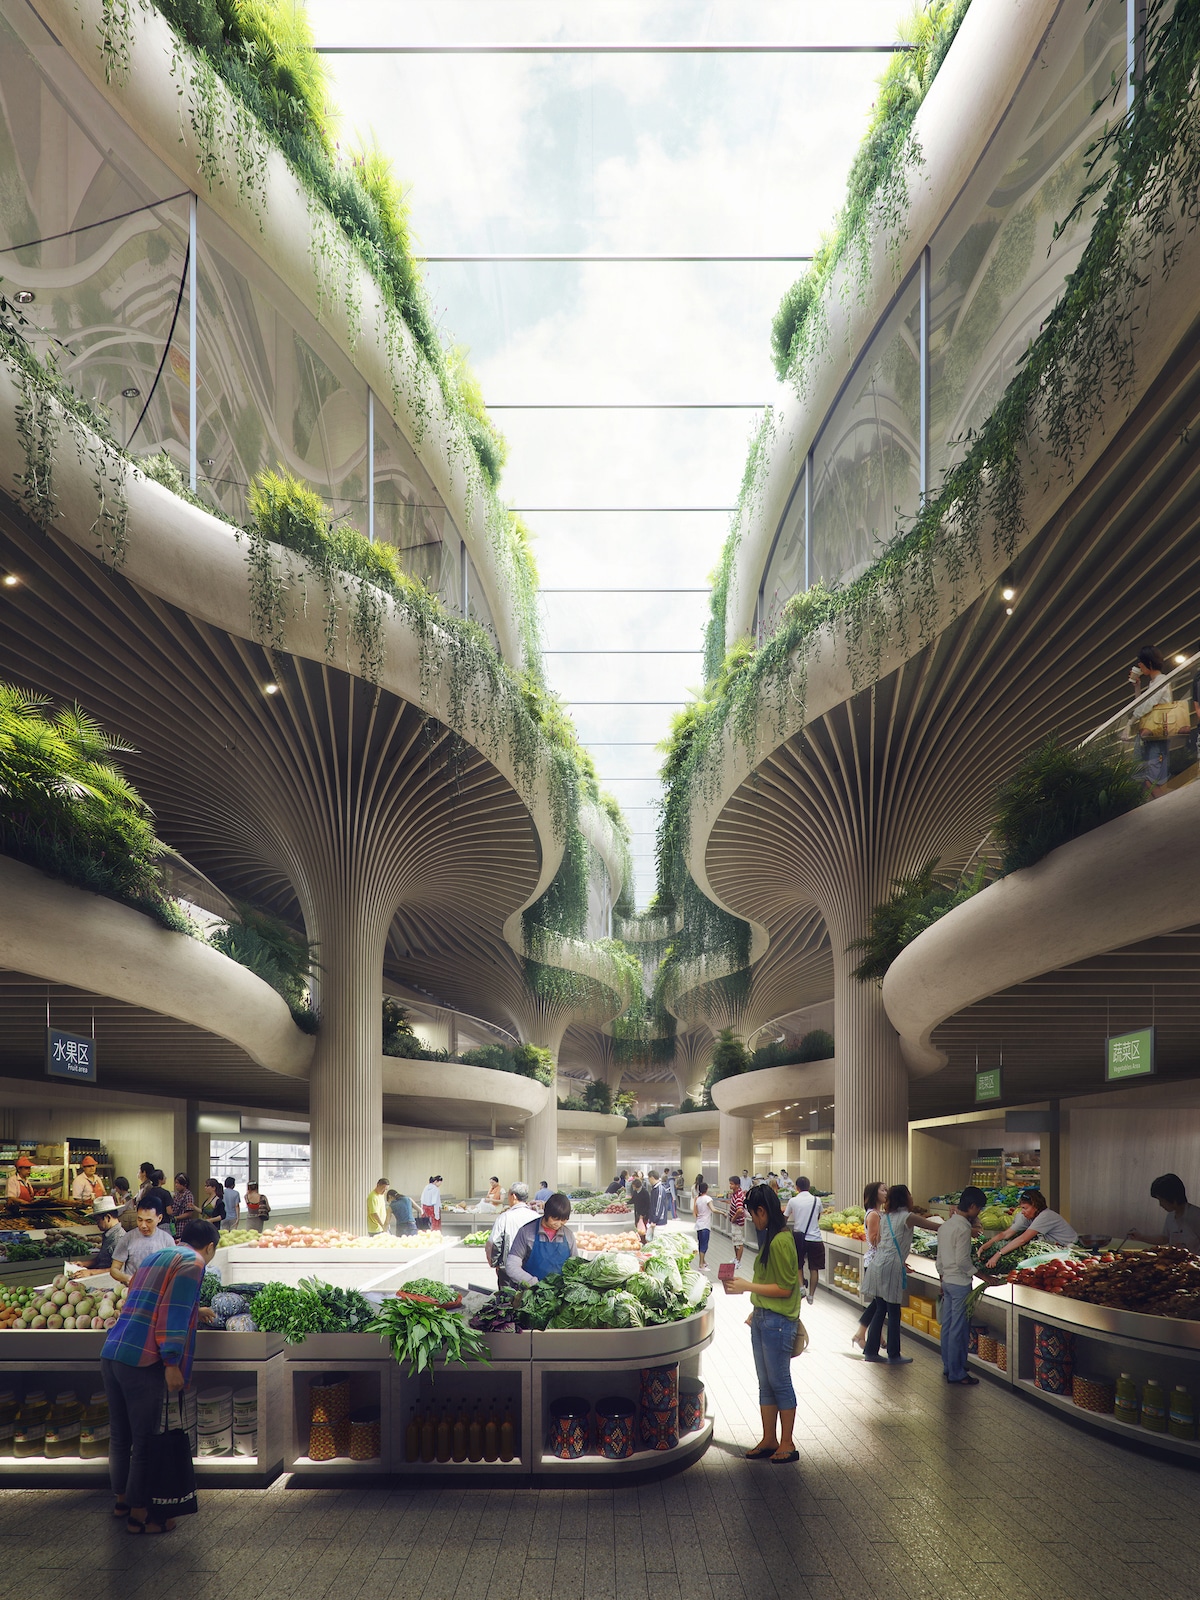 Solar Trees Marketplace by Koichi Takada Architects